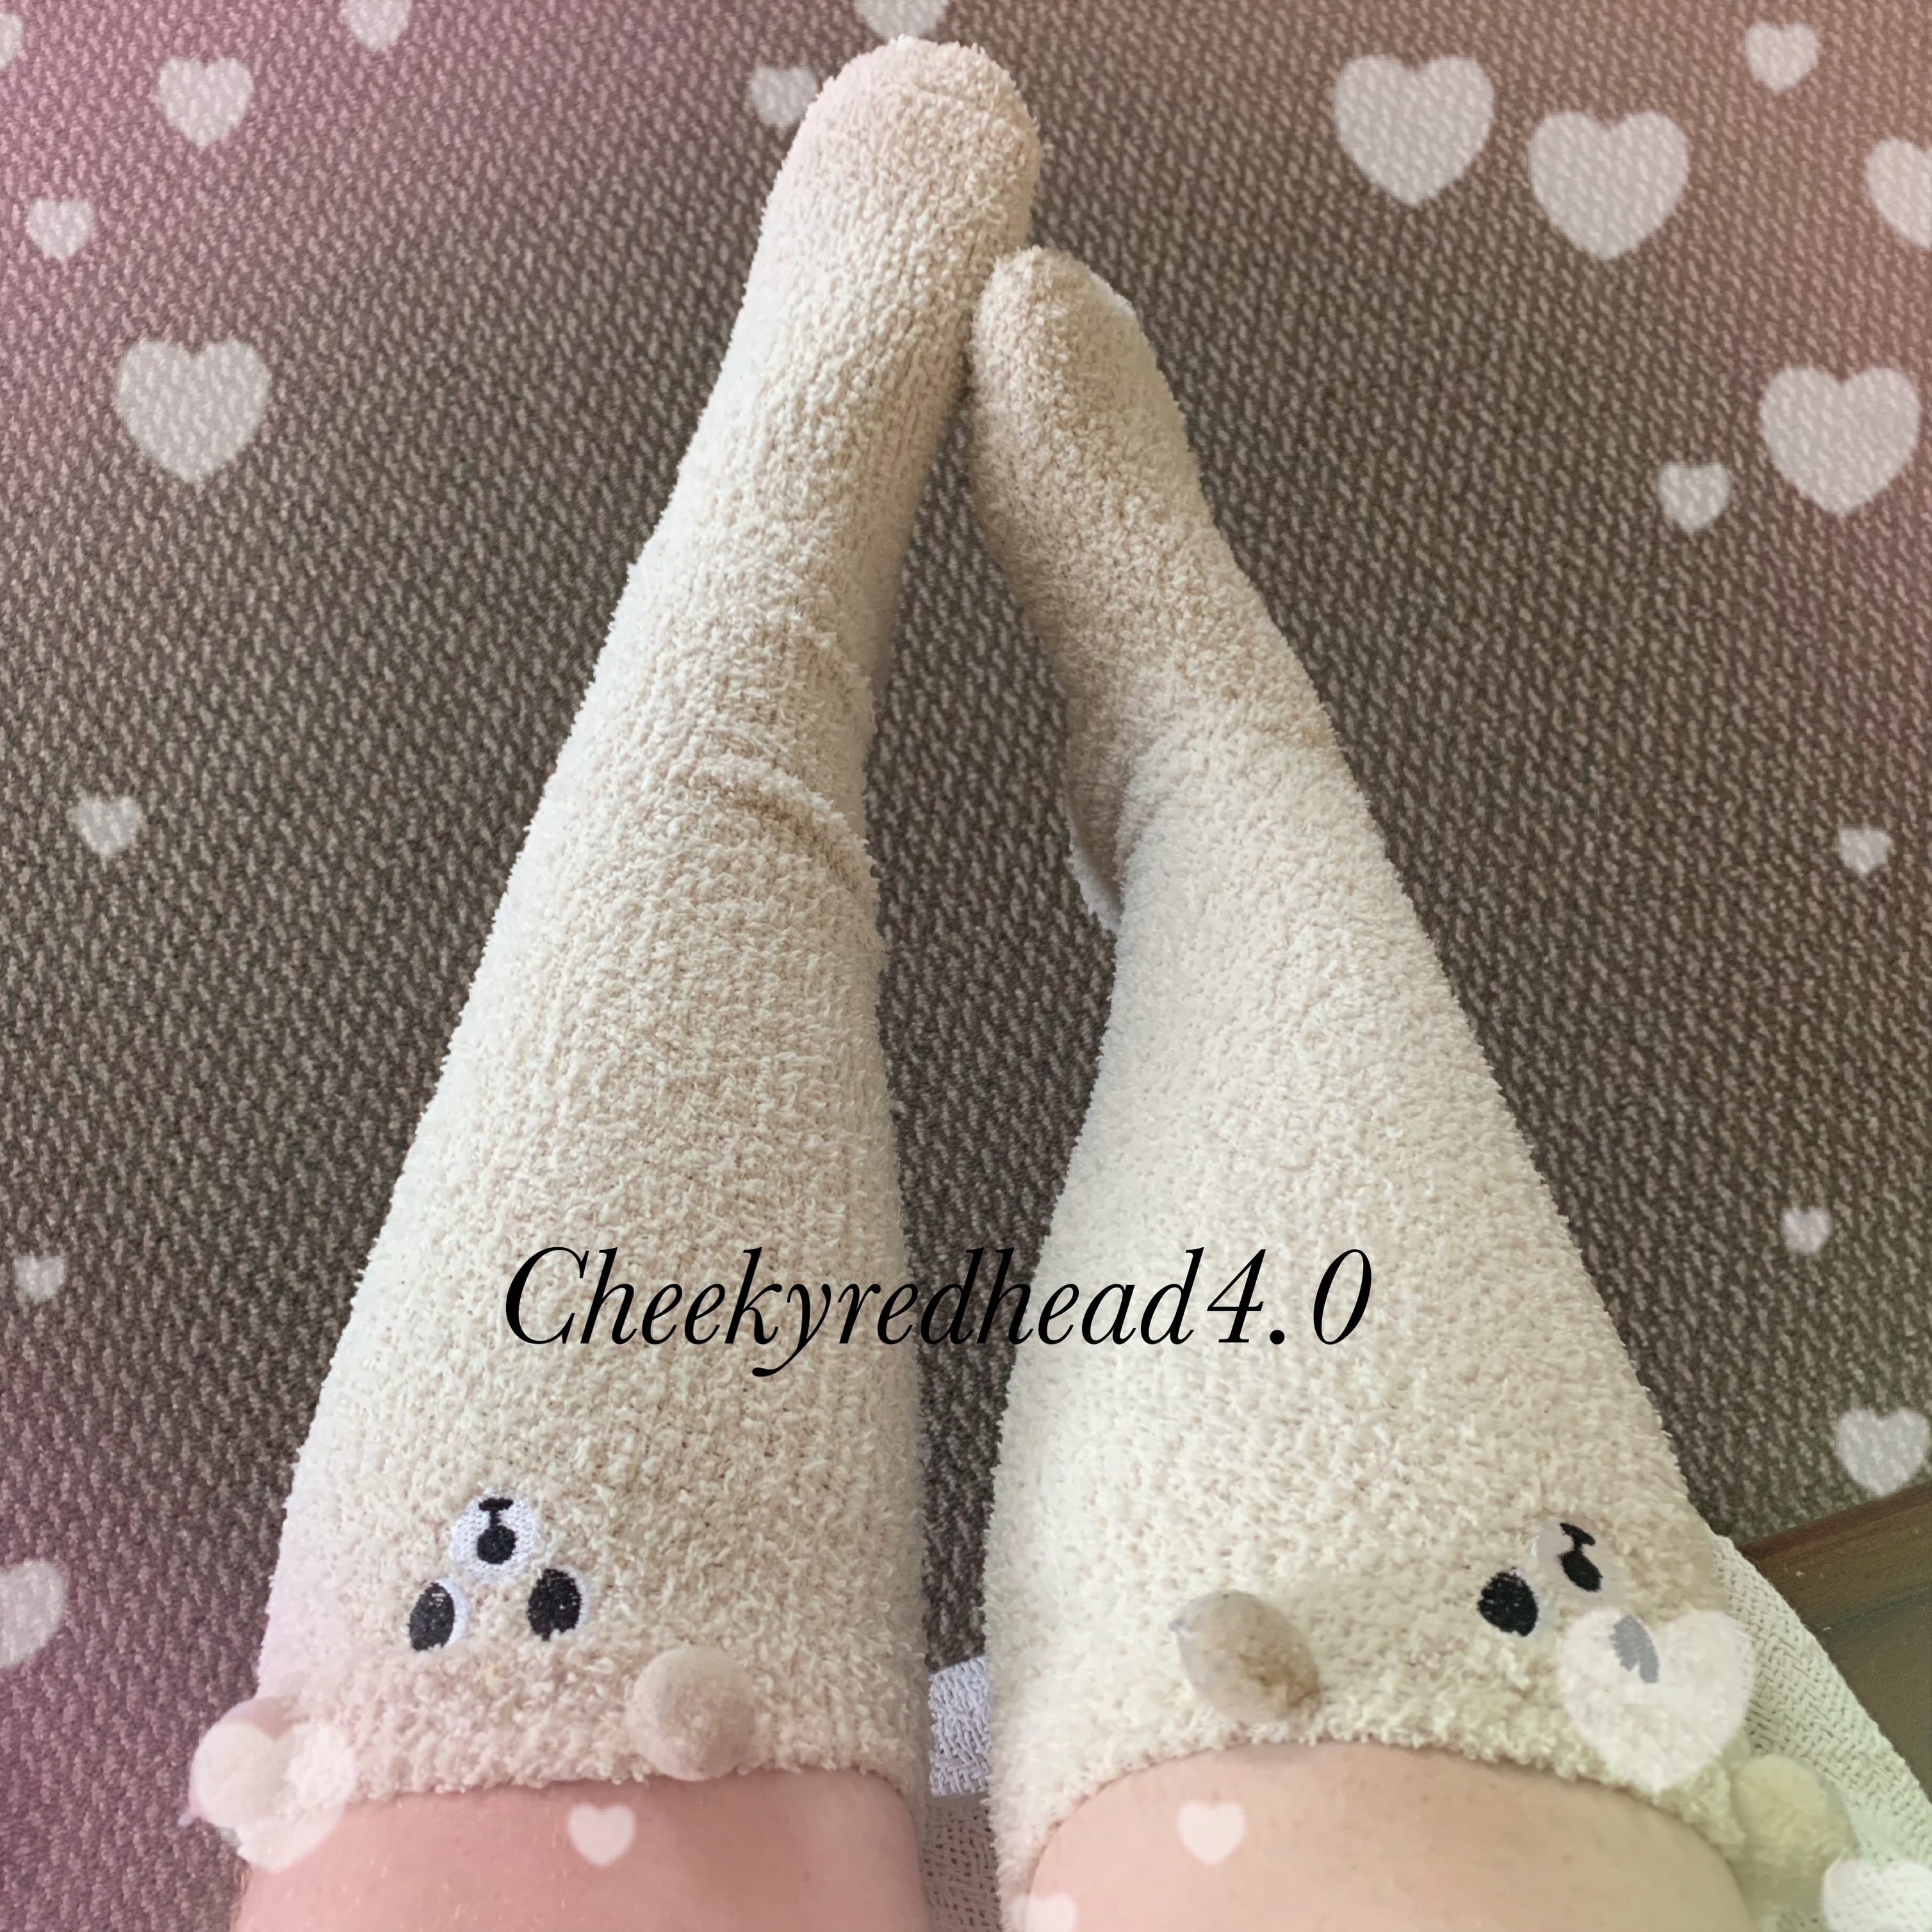 Perfectly fuzzy 🤍 #fuzzysocks #socks #kneesocks #fuzzykneehighsocks #fuzzy #kneehighsocks